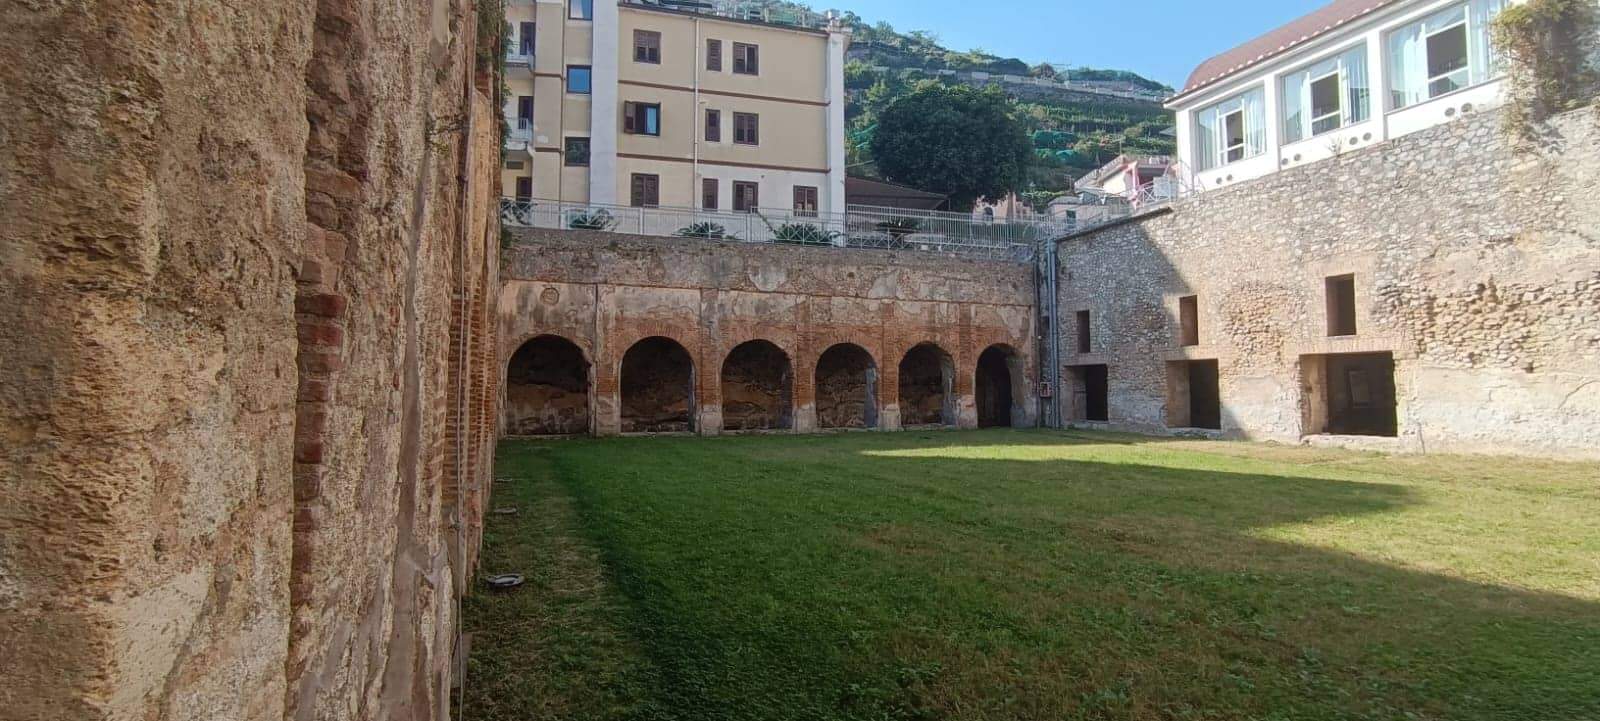 Côte amalfitaine, début des travaux de restauration de la Villa romaine de Minori